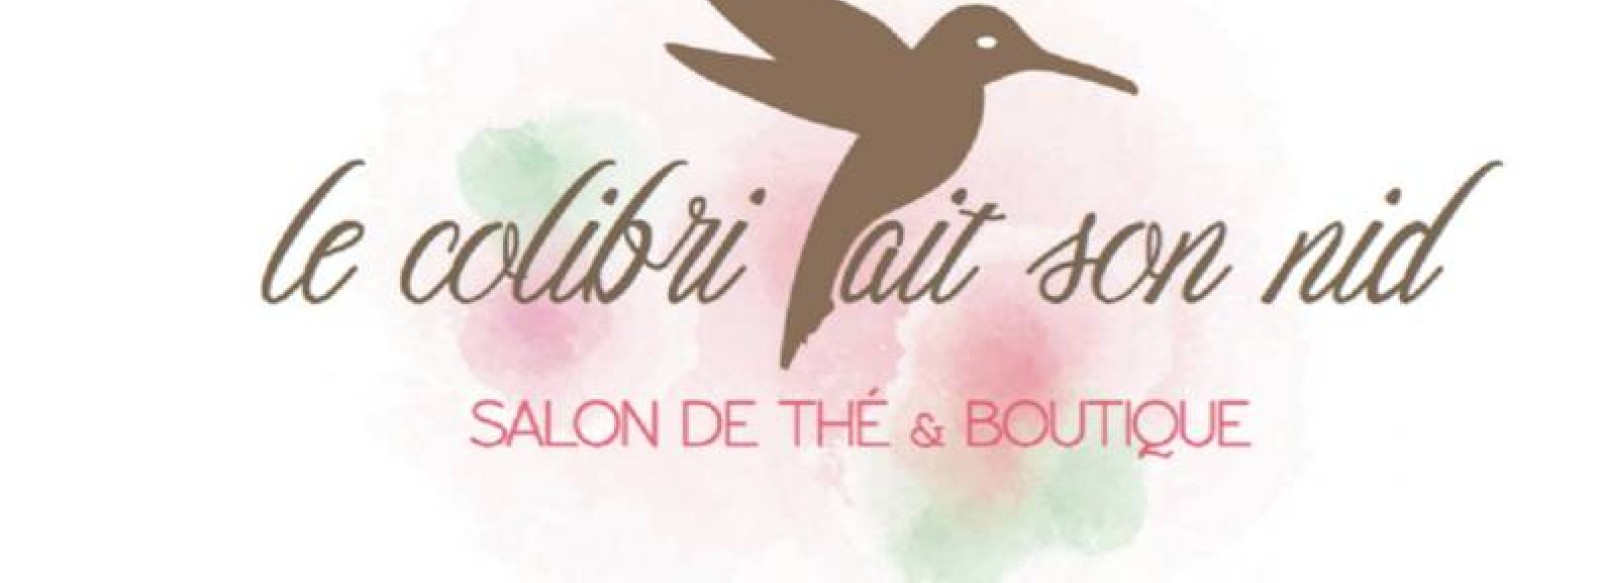 Le Colibri fait son nid - Salon de the & Boutique